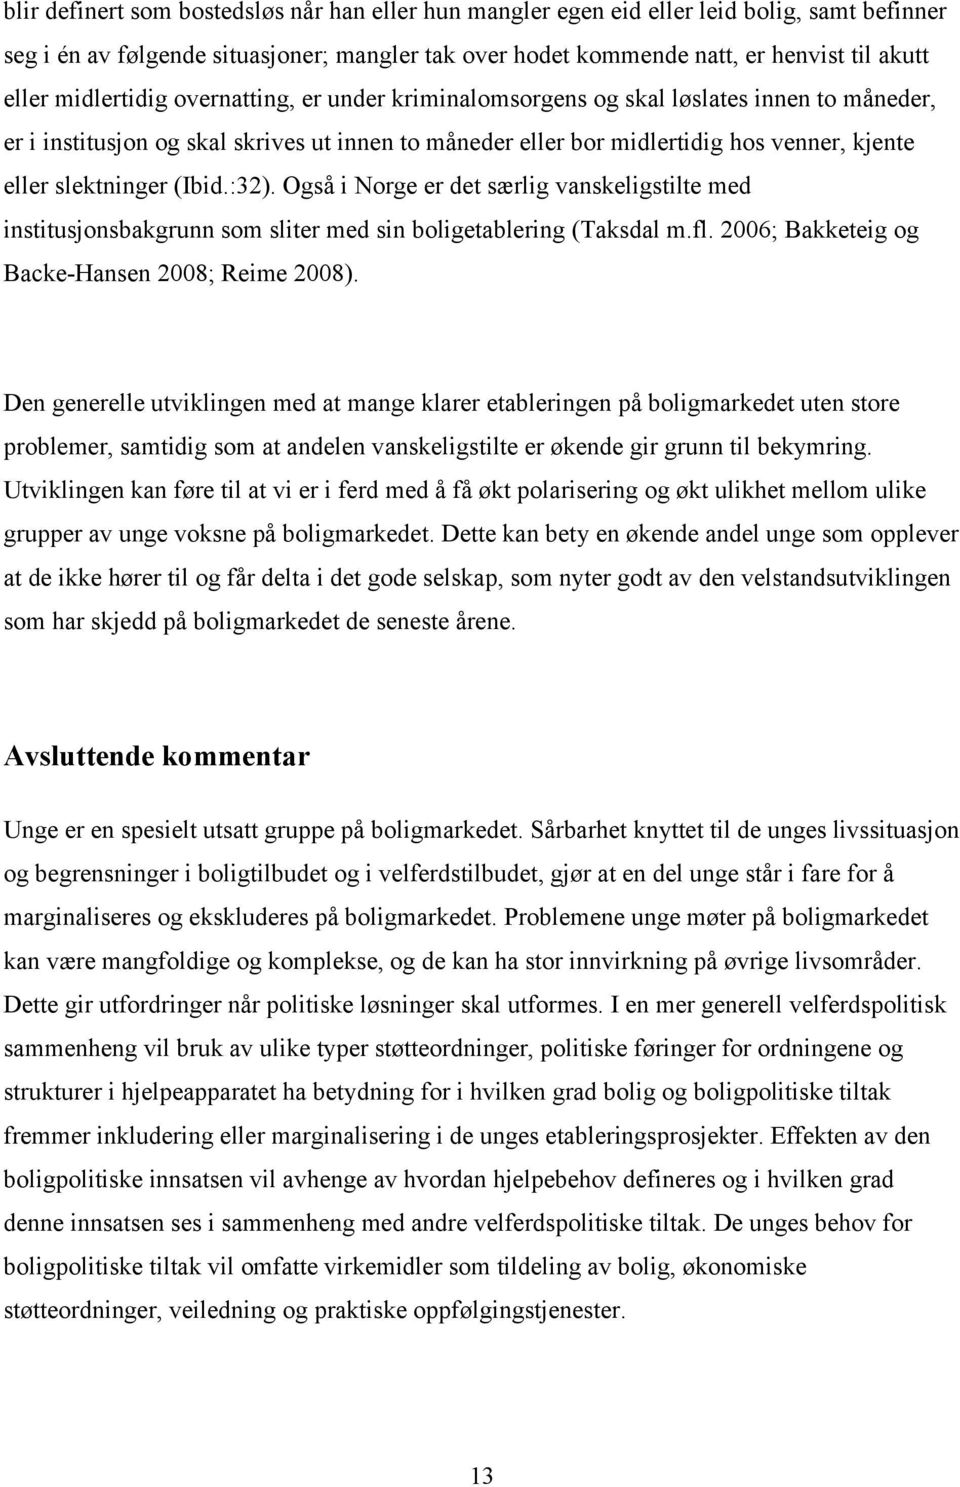 (Ibid.:32). Også i Norge er det særlig vanskeligstilte med institusjonsbakgrunn som sliter med sin boligetablering (Taksdal m.fl. 2006; Bakketeig og Backe-Hansen 2008; Reime 2008).